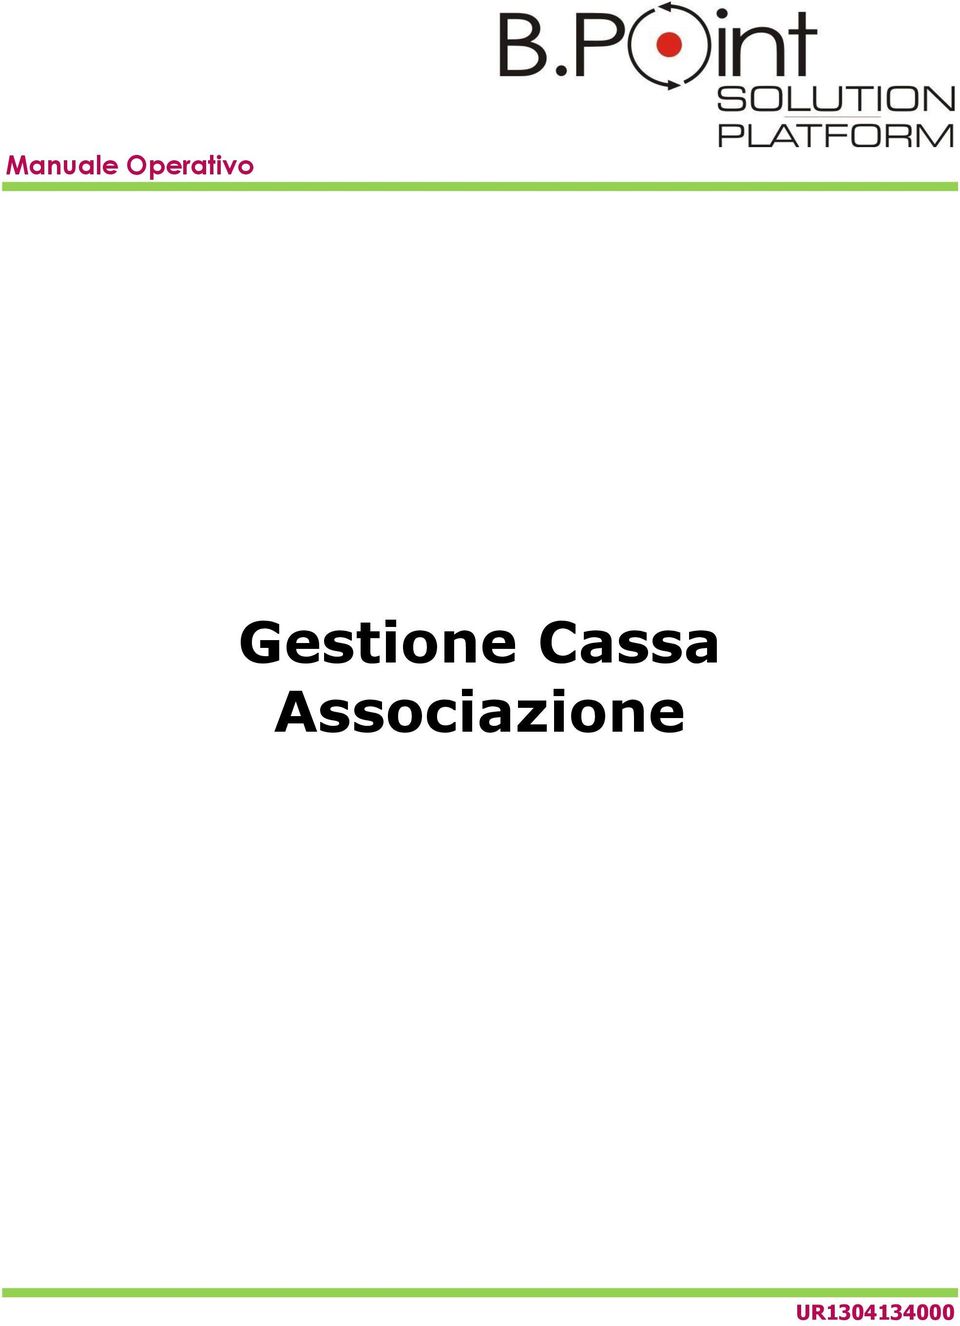 Gestione Cassa